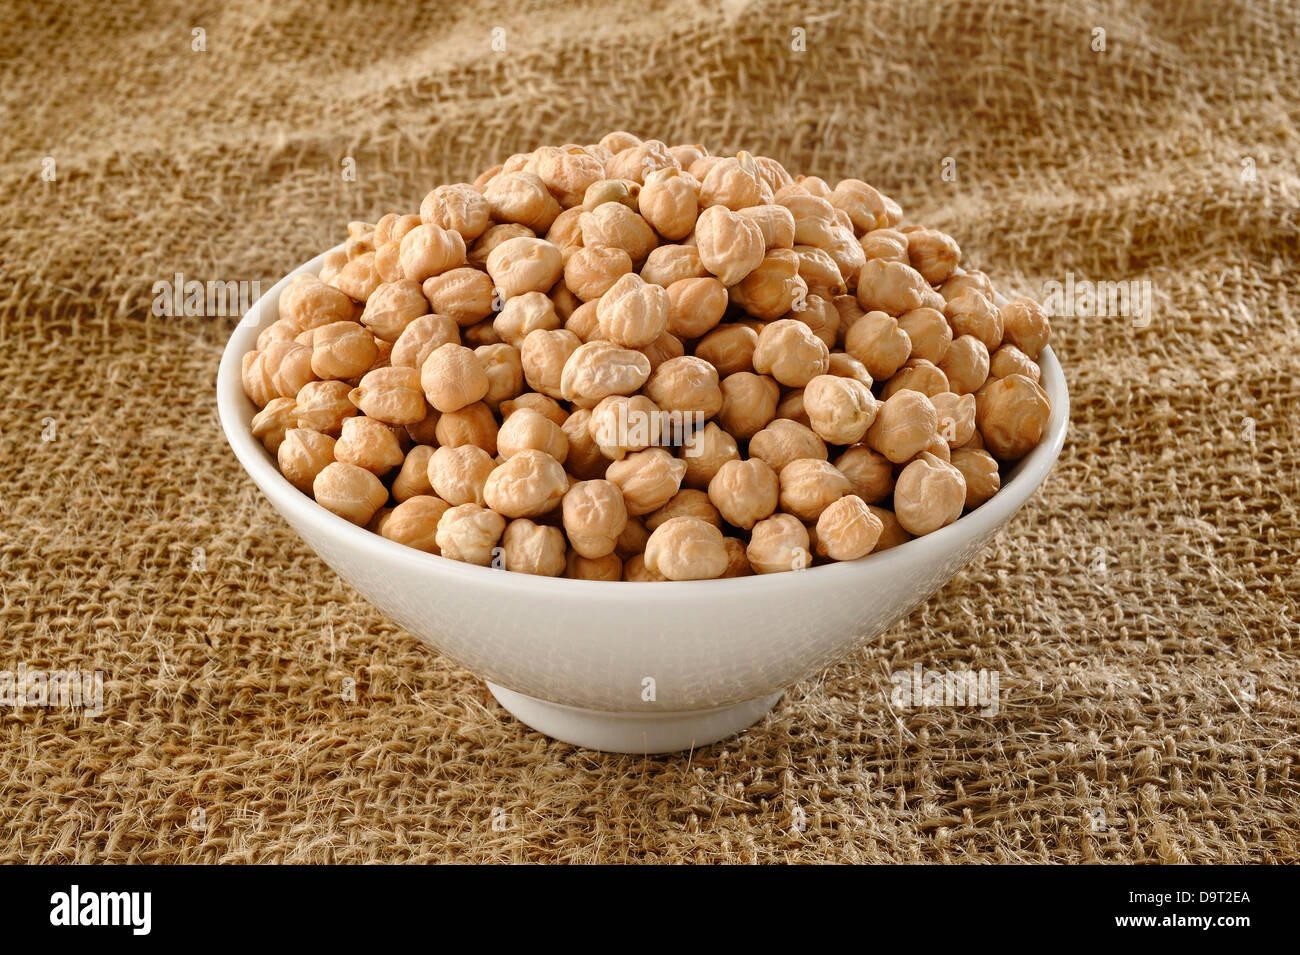 garbanzo bean on bowl Stock Photo